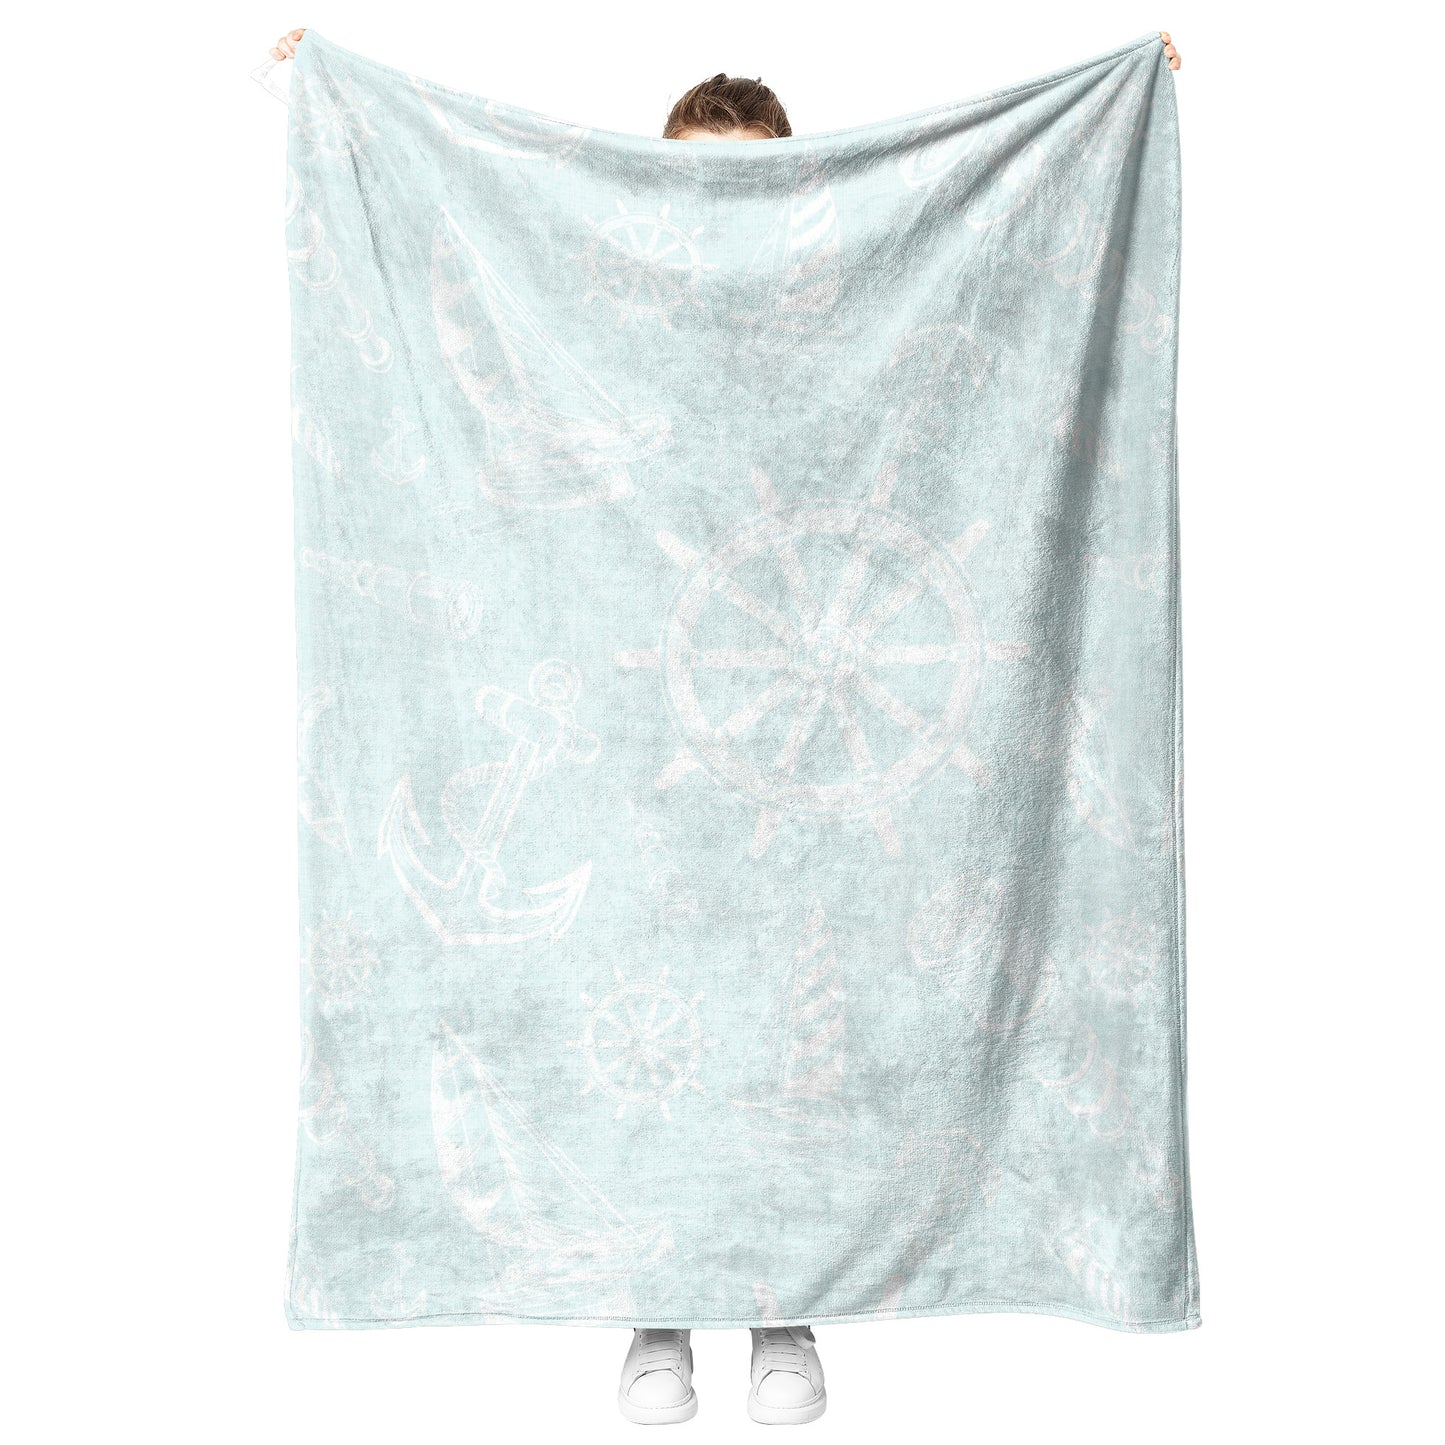 Nautical Sketches on Mist Linen Texture Background, Fleece Blanket